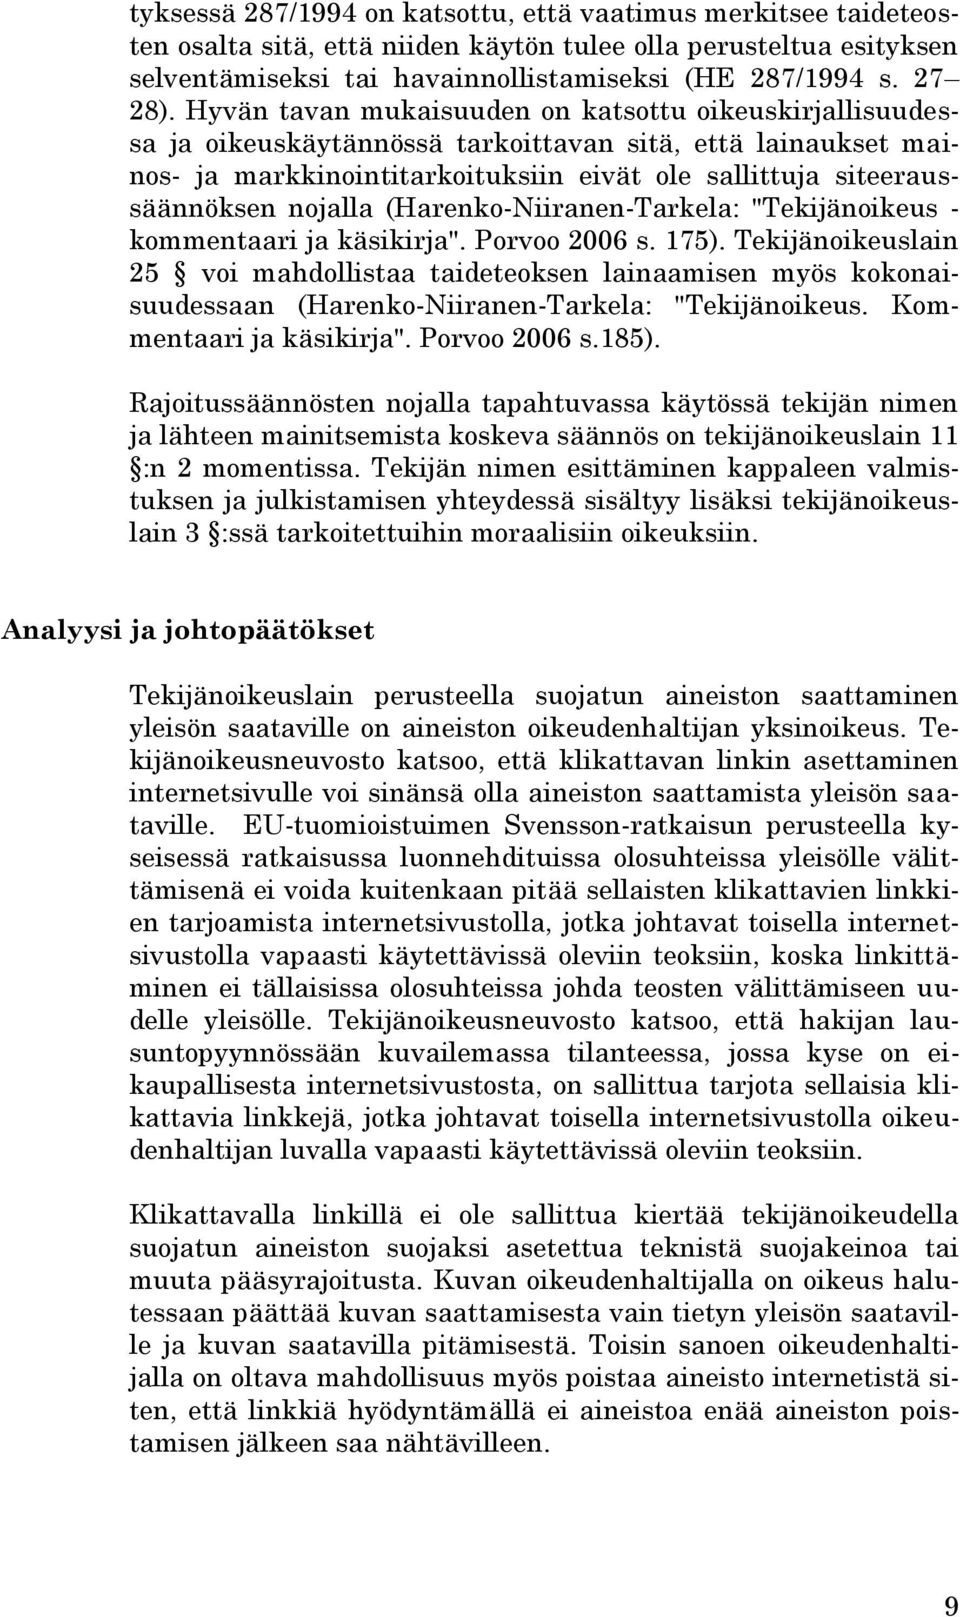 nojalla (Harenko-Niiranen-Tarkela: "Tekijänoikeus - kommentaari ja käsikirja". Porvoo 2006 s. 175).